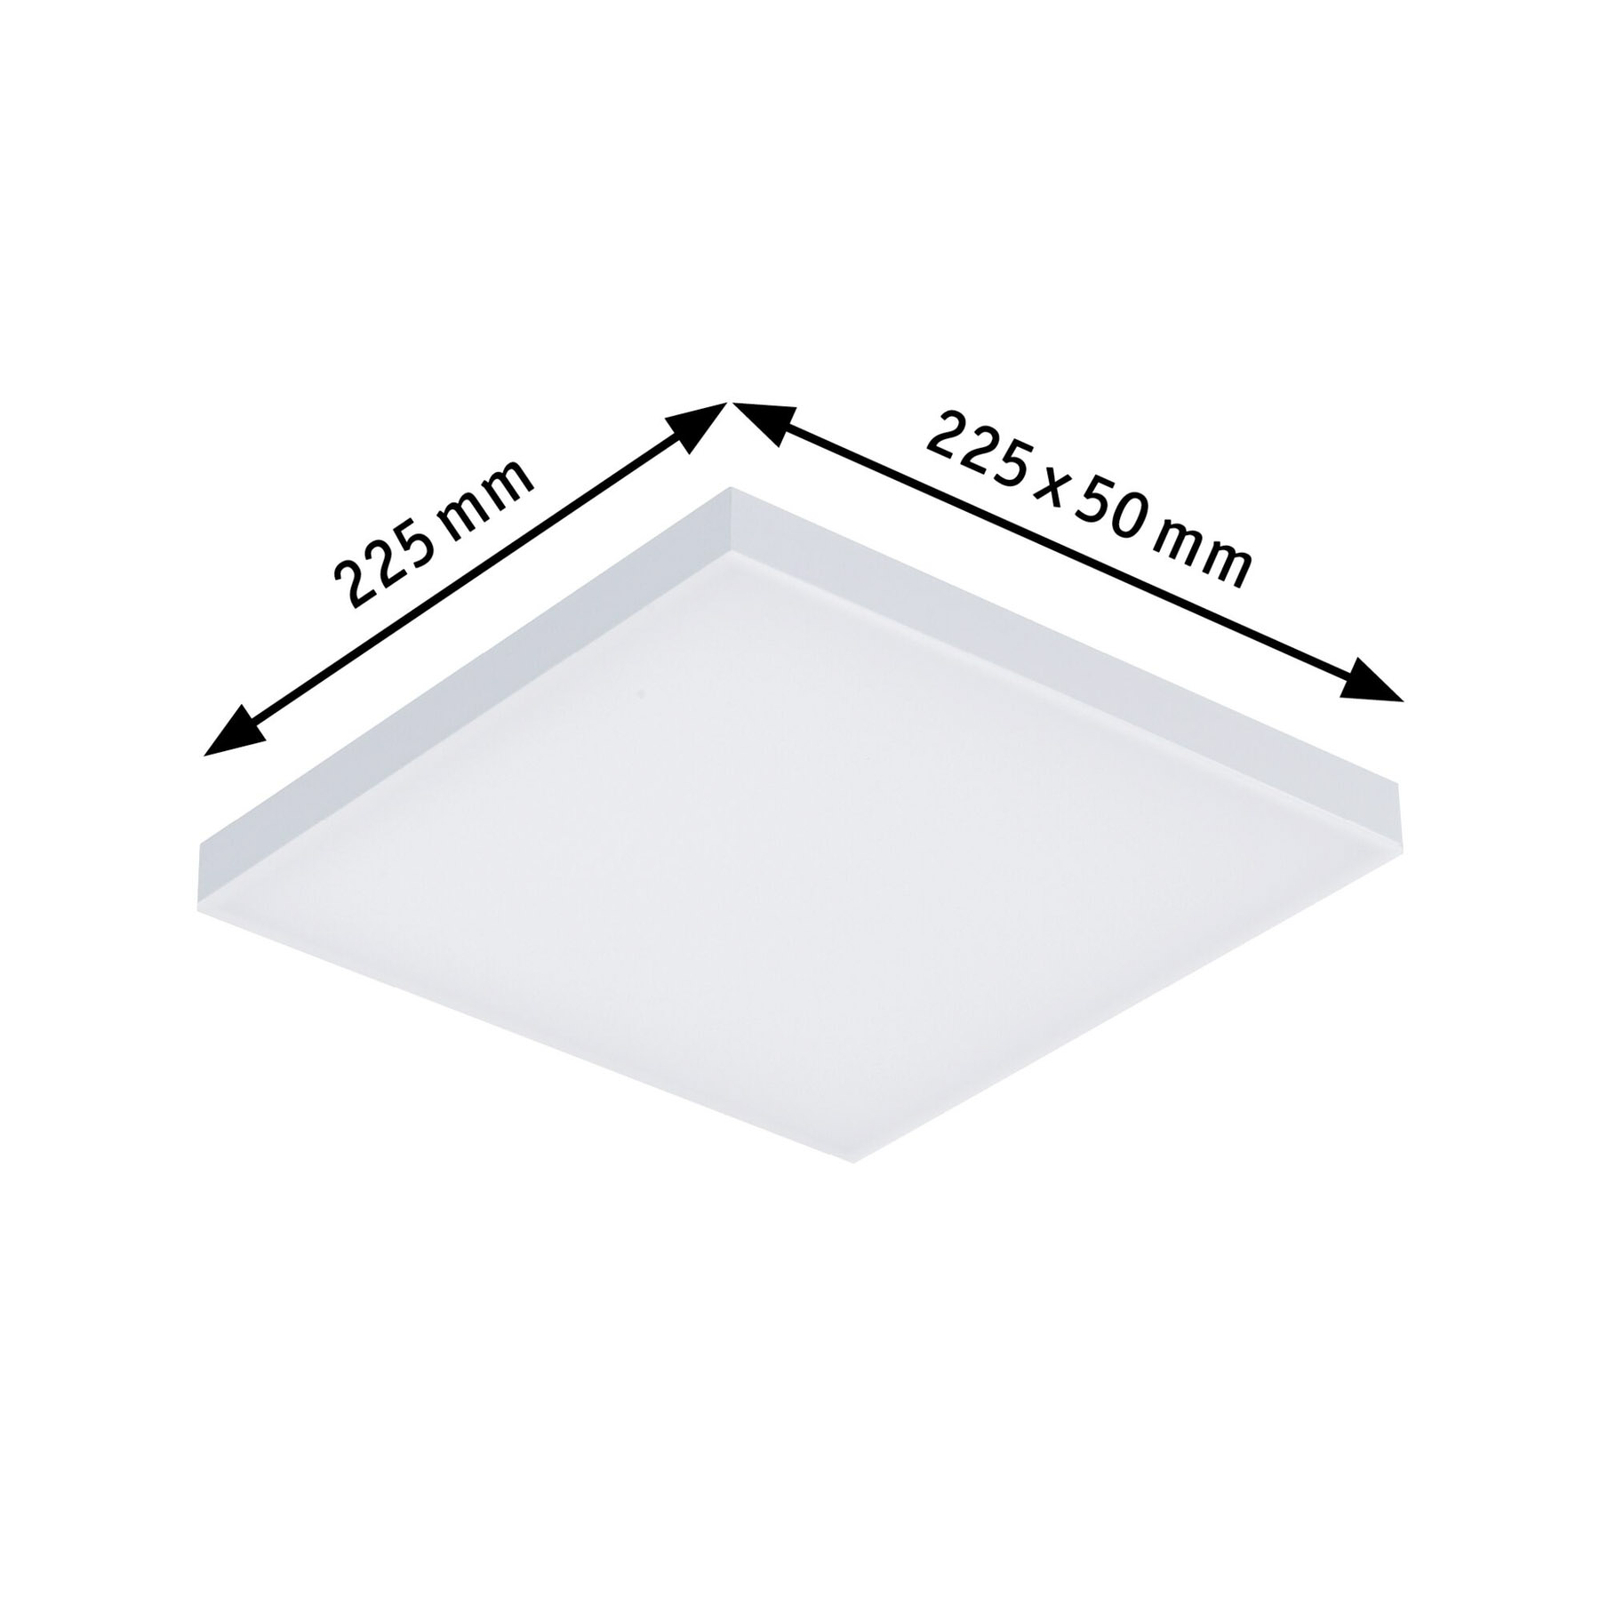 Paulmann Velora LED stropní světlo, 22,5 x 22,5cm